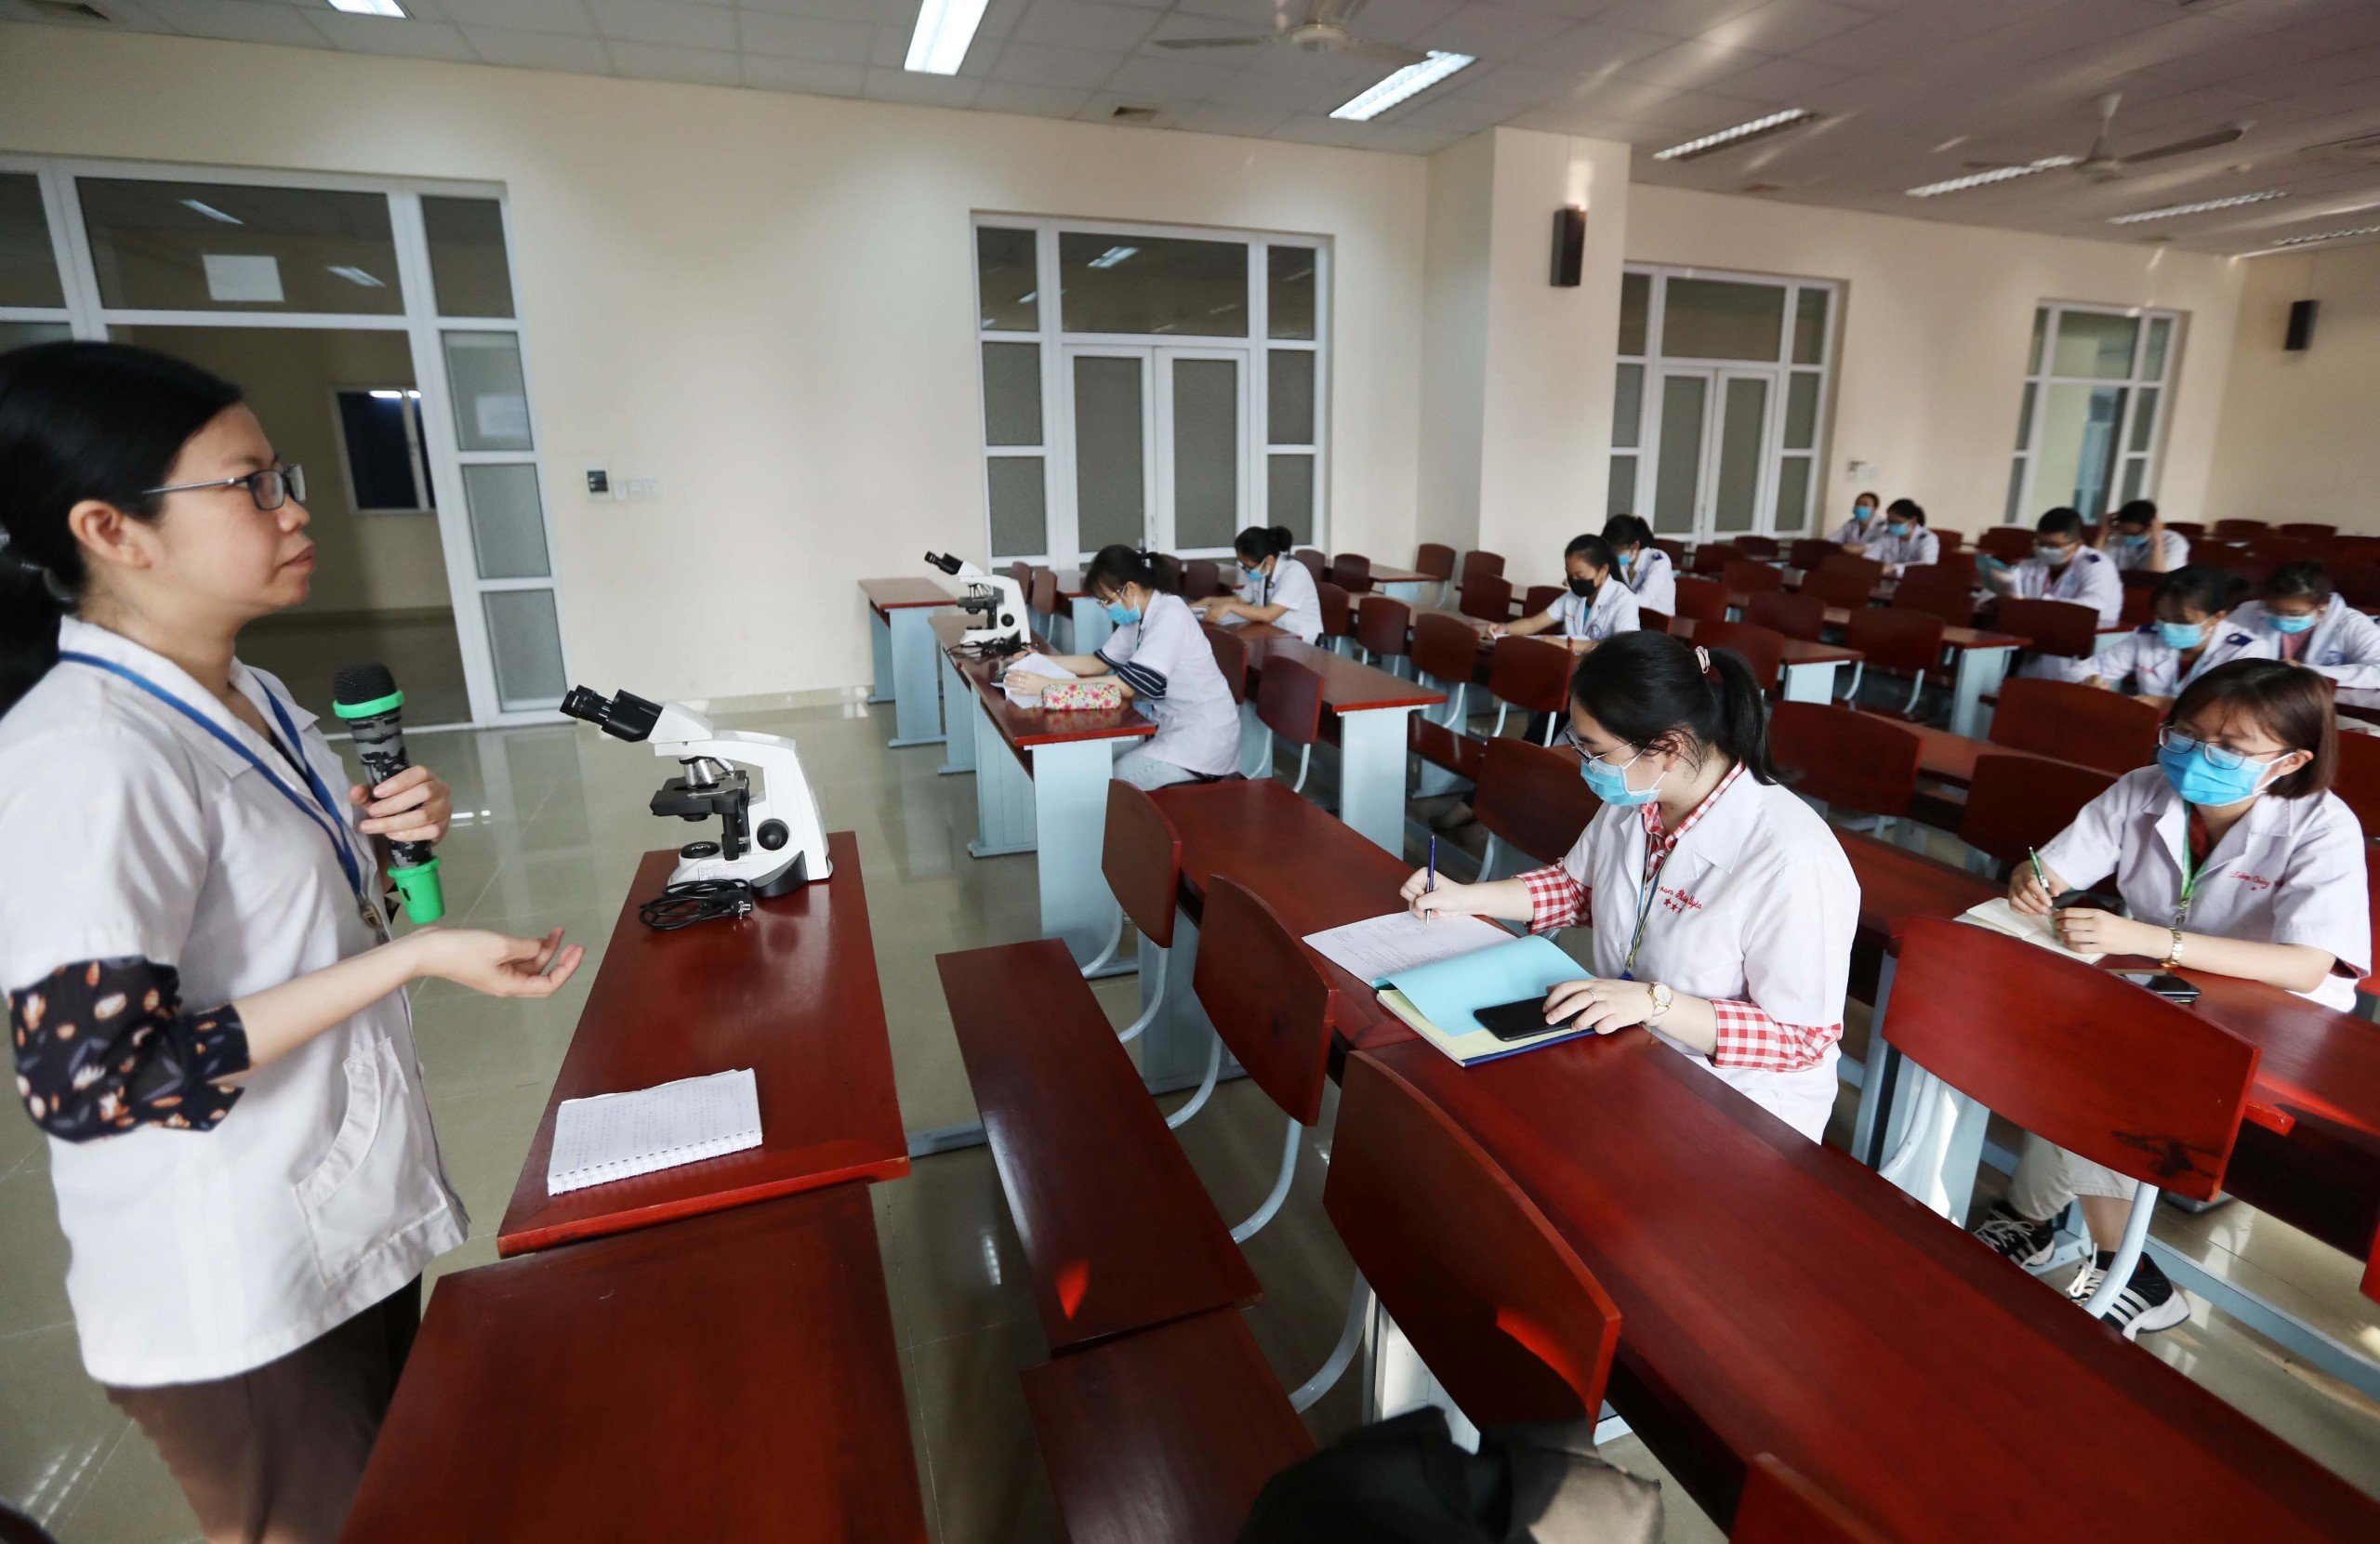 Les écoles de médecine vietnamiennes visent à ce que leurs programmes de formation soient accrédités et reconnus dans le monde entier.